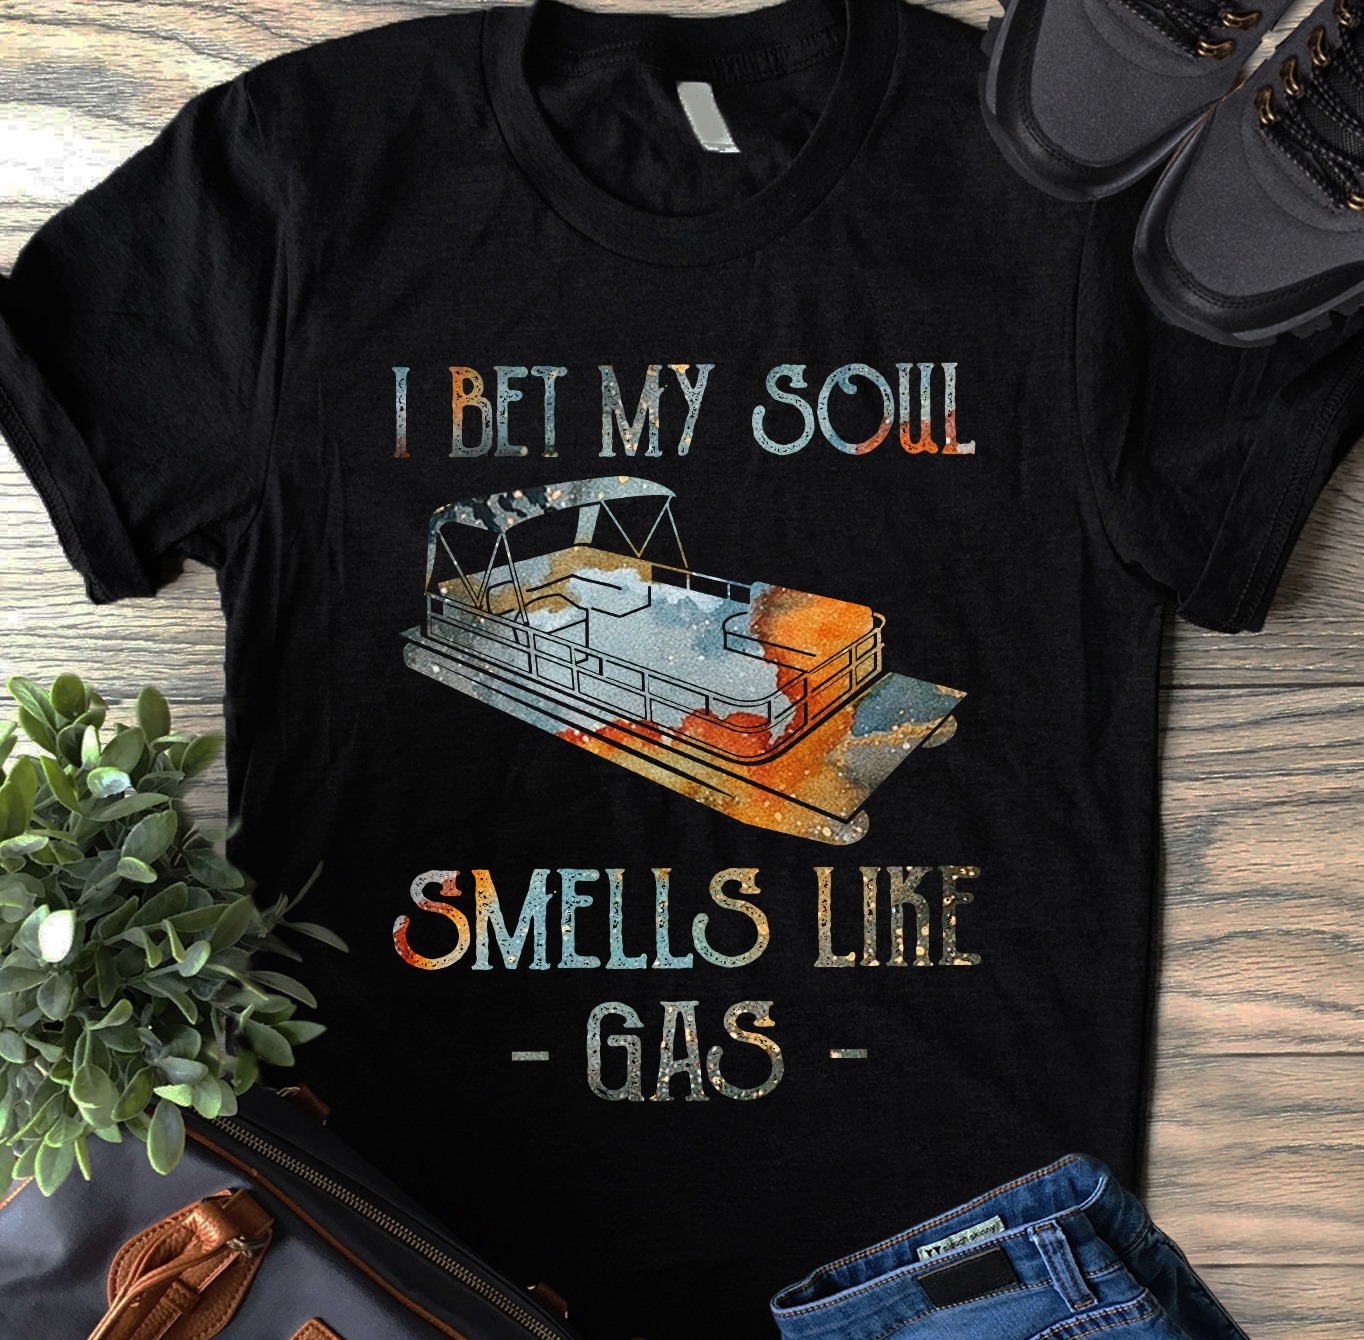 I bet my soul smells like gas - Pontooning lover